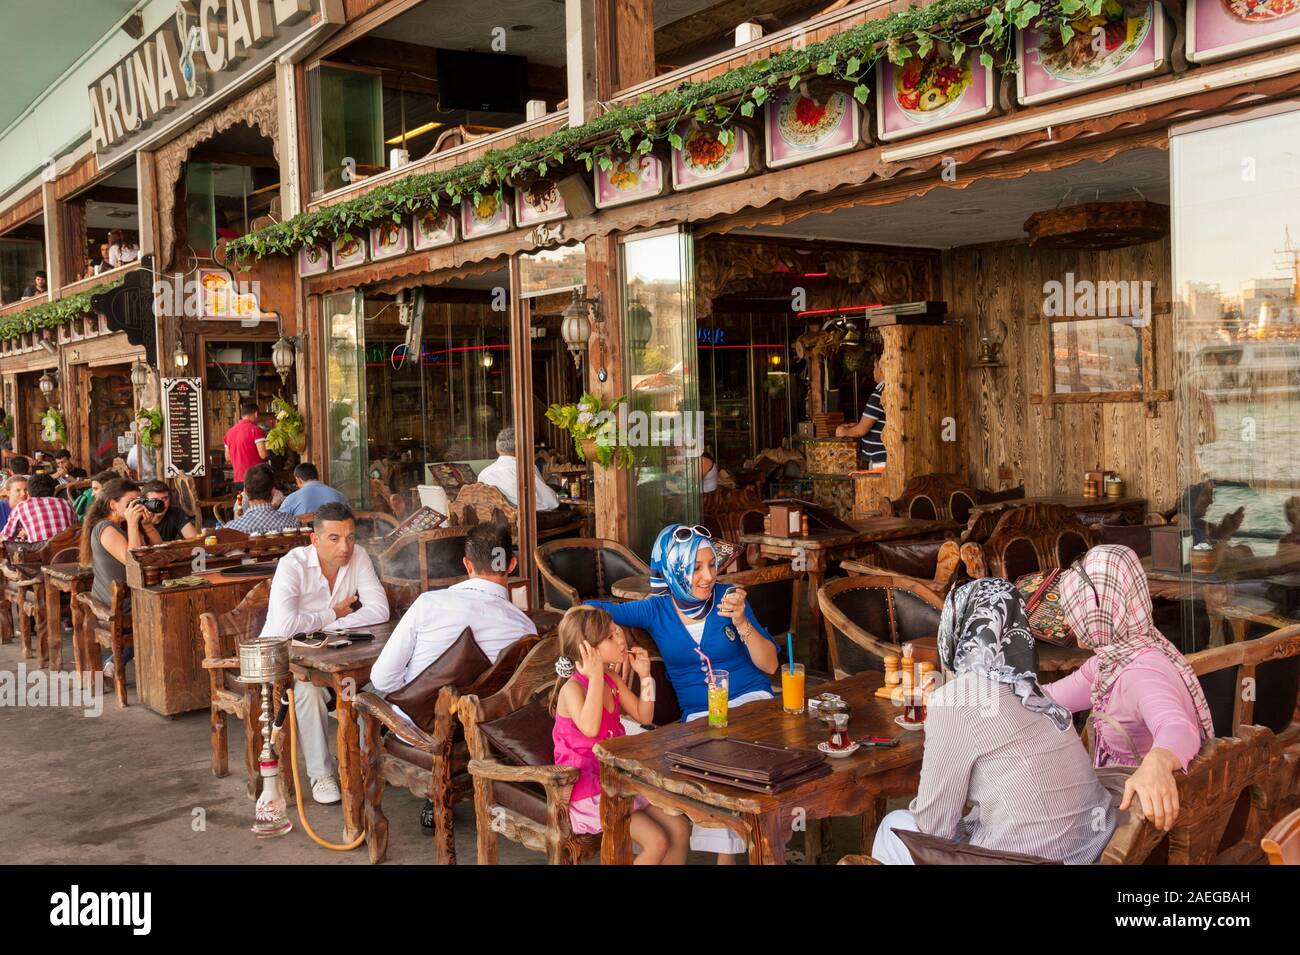 Restaurante y cafetería, bajo el puente de Galata, Eminonu, Estambul, Turquía Foto de stock